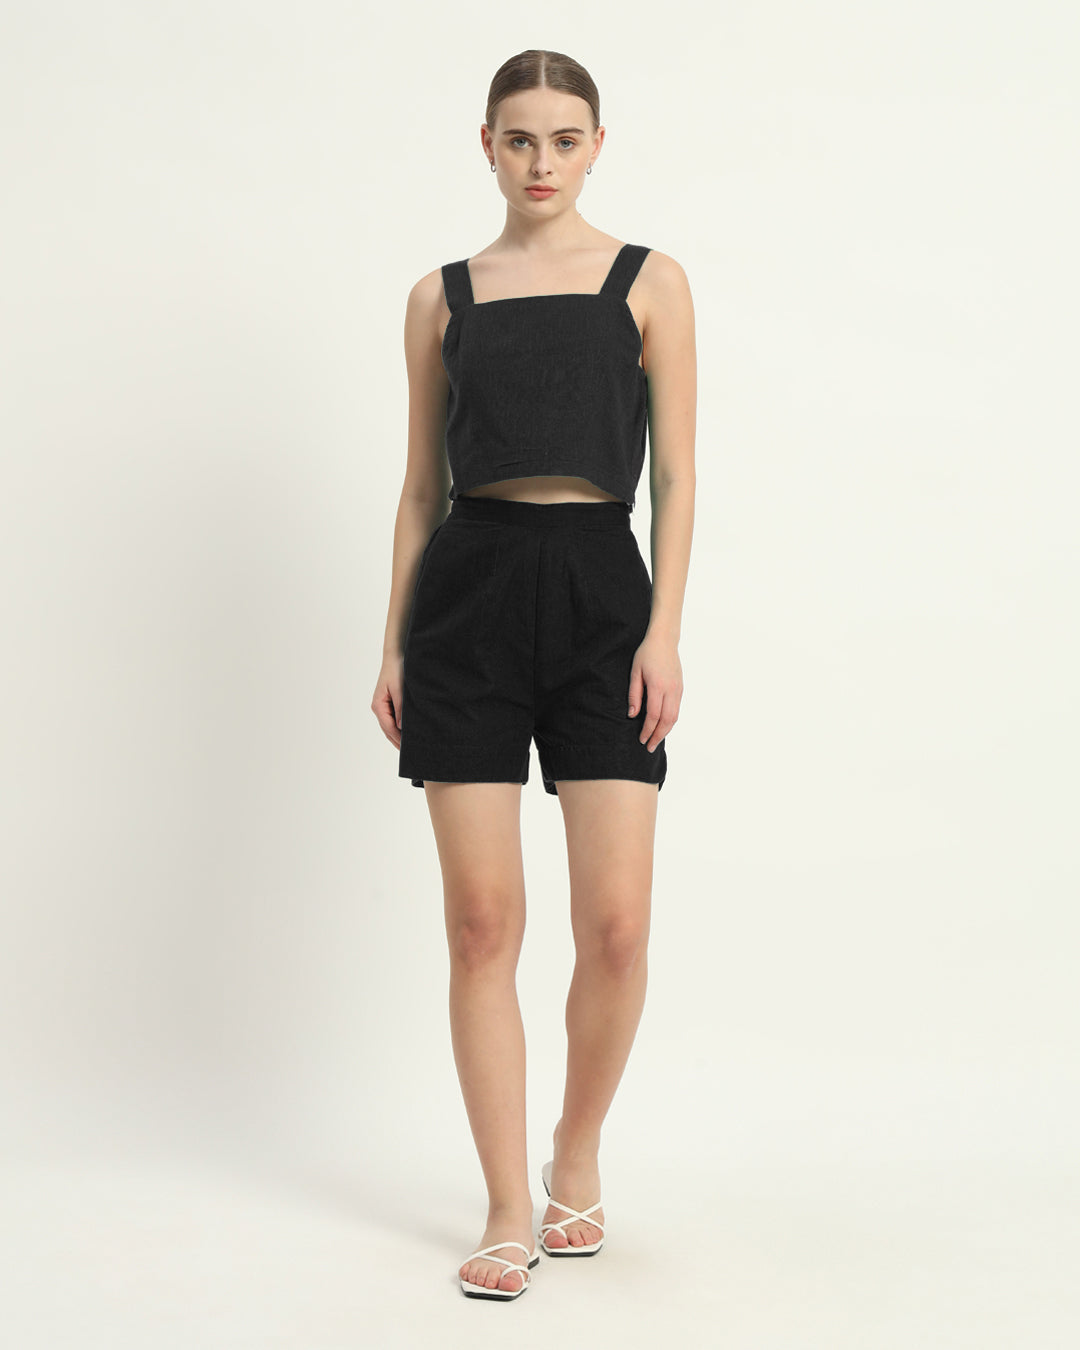 Shorts Matching Set Noir Sleek Square Crop